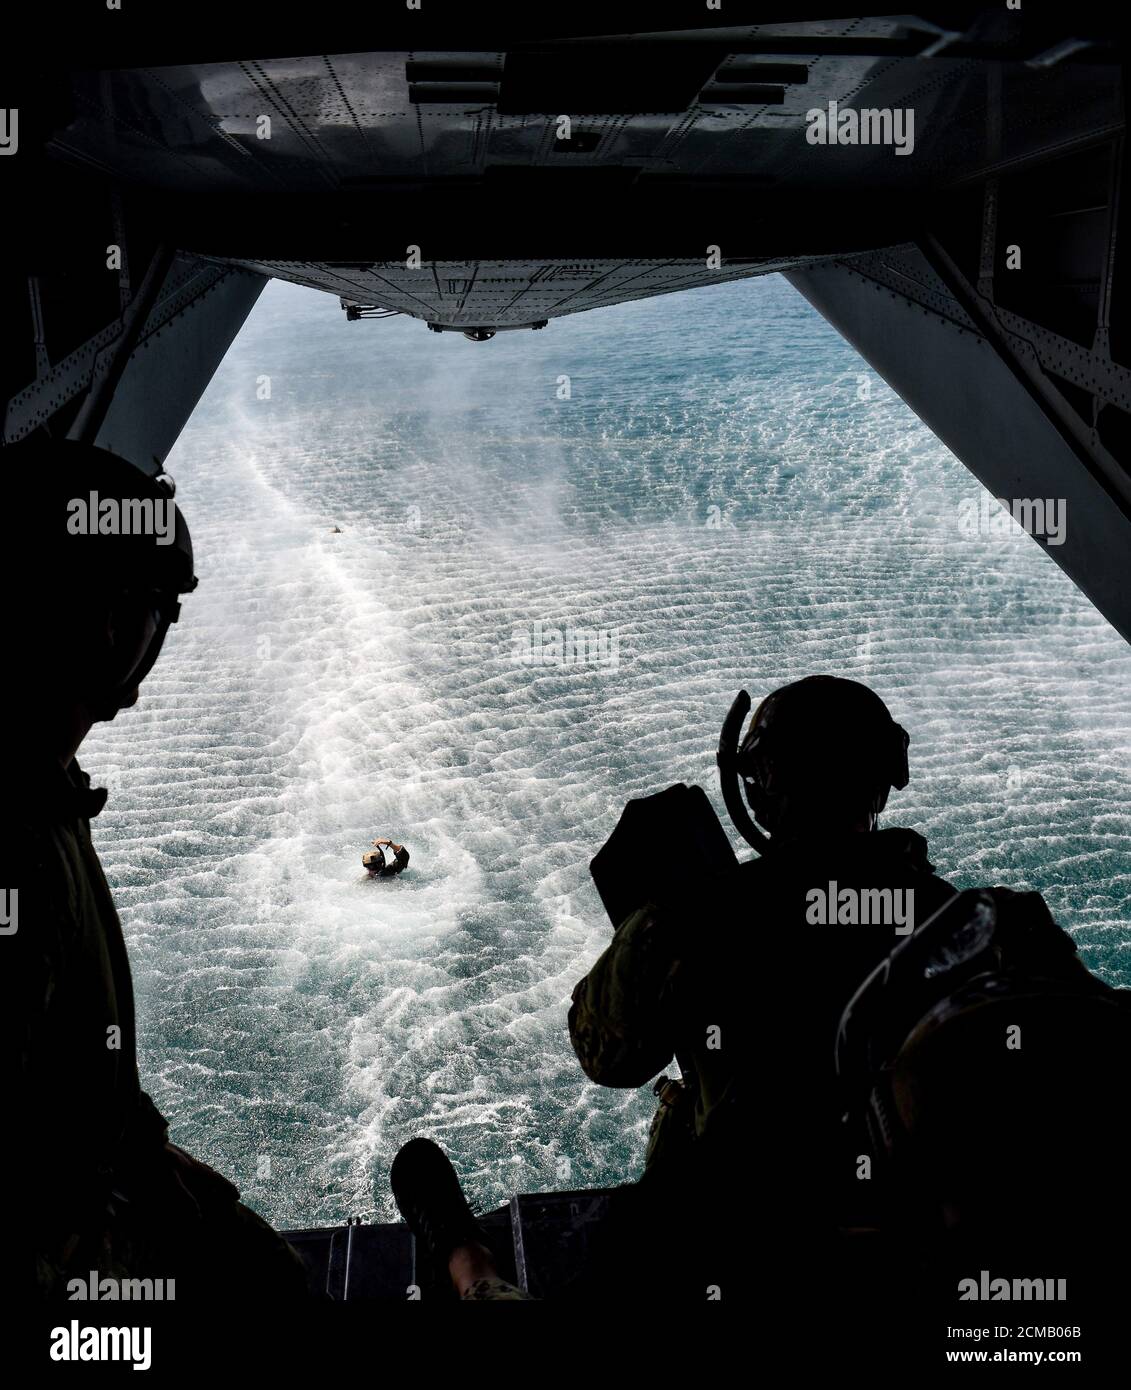 200831-A-FT-904-1305 ARABISCHEN GOLF (AUG 31, 2020) ein Sprengstoffentsorgungstechniker, der dem Kommandanten der Task Force (CTF) 52 zugewiesen wurde, bereitet sich darauf vor, während des Guss- und Bergetrainings im Arabischen Golf am 31. August einen Hubschrauber MH-53 Sea Dragon auszuwerfen. CTF 52 wird in den 5. Flottenbereich der USA eingesetzt, um Marinestörungen zu unterstützen, um die maritime Stabilität und Sicherheit in der Zentralregion zu gewährleisten, und verbindet das Mittelmeer und den Pazifik durch den westlichen Indischen Ozean und drei strategische Engpässe mit dem freien Fluss des globalen Handels. (USA Armee Foto von Staff Sgt. Timothy Clegg) Stockfoto